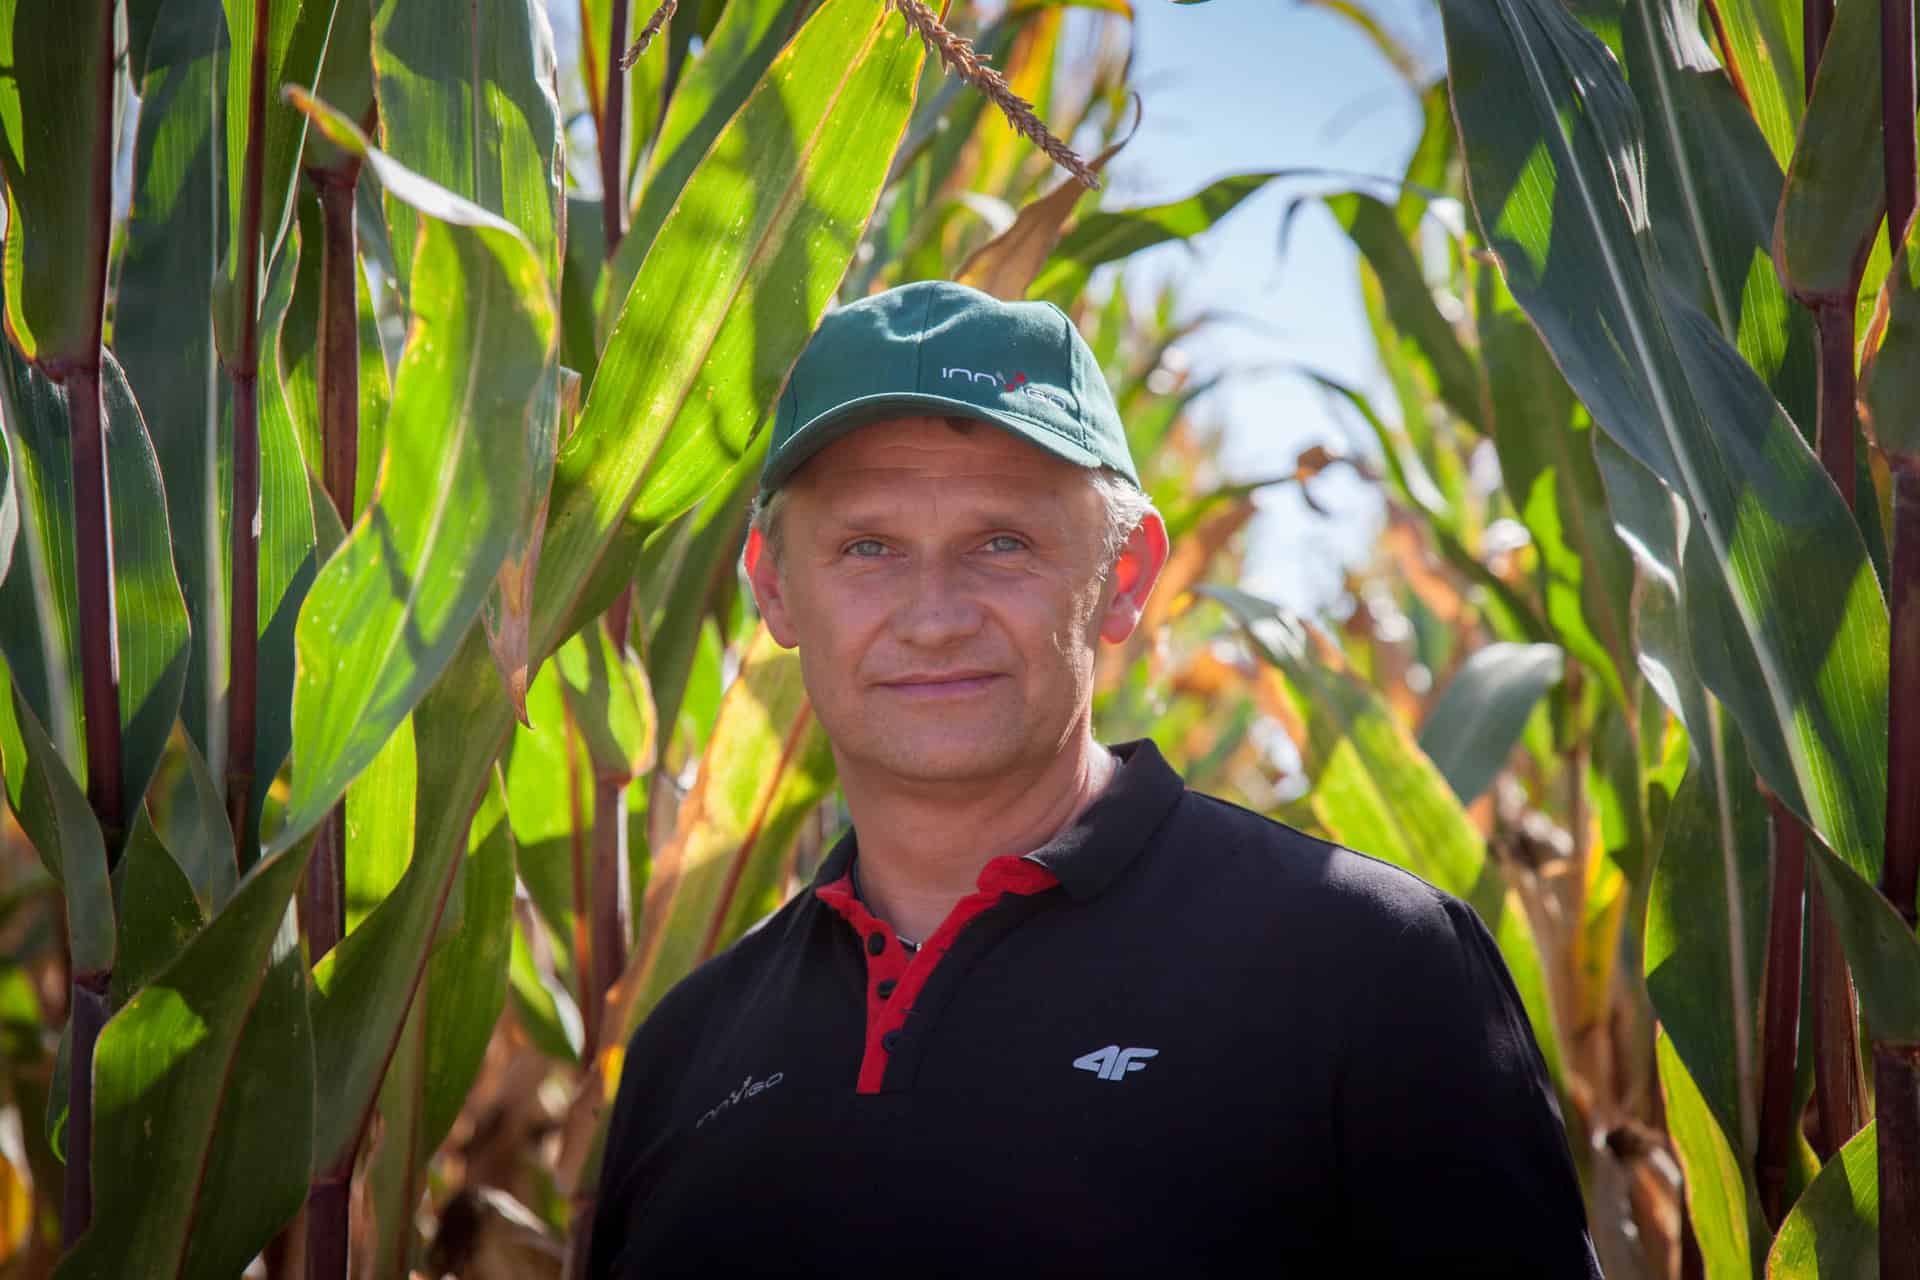 ochrona kukurydzy, opryski - zwalczanie chwastów, herbicydy na kukurydzę Marcin Bystroński